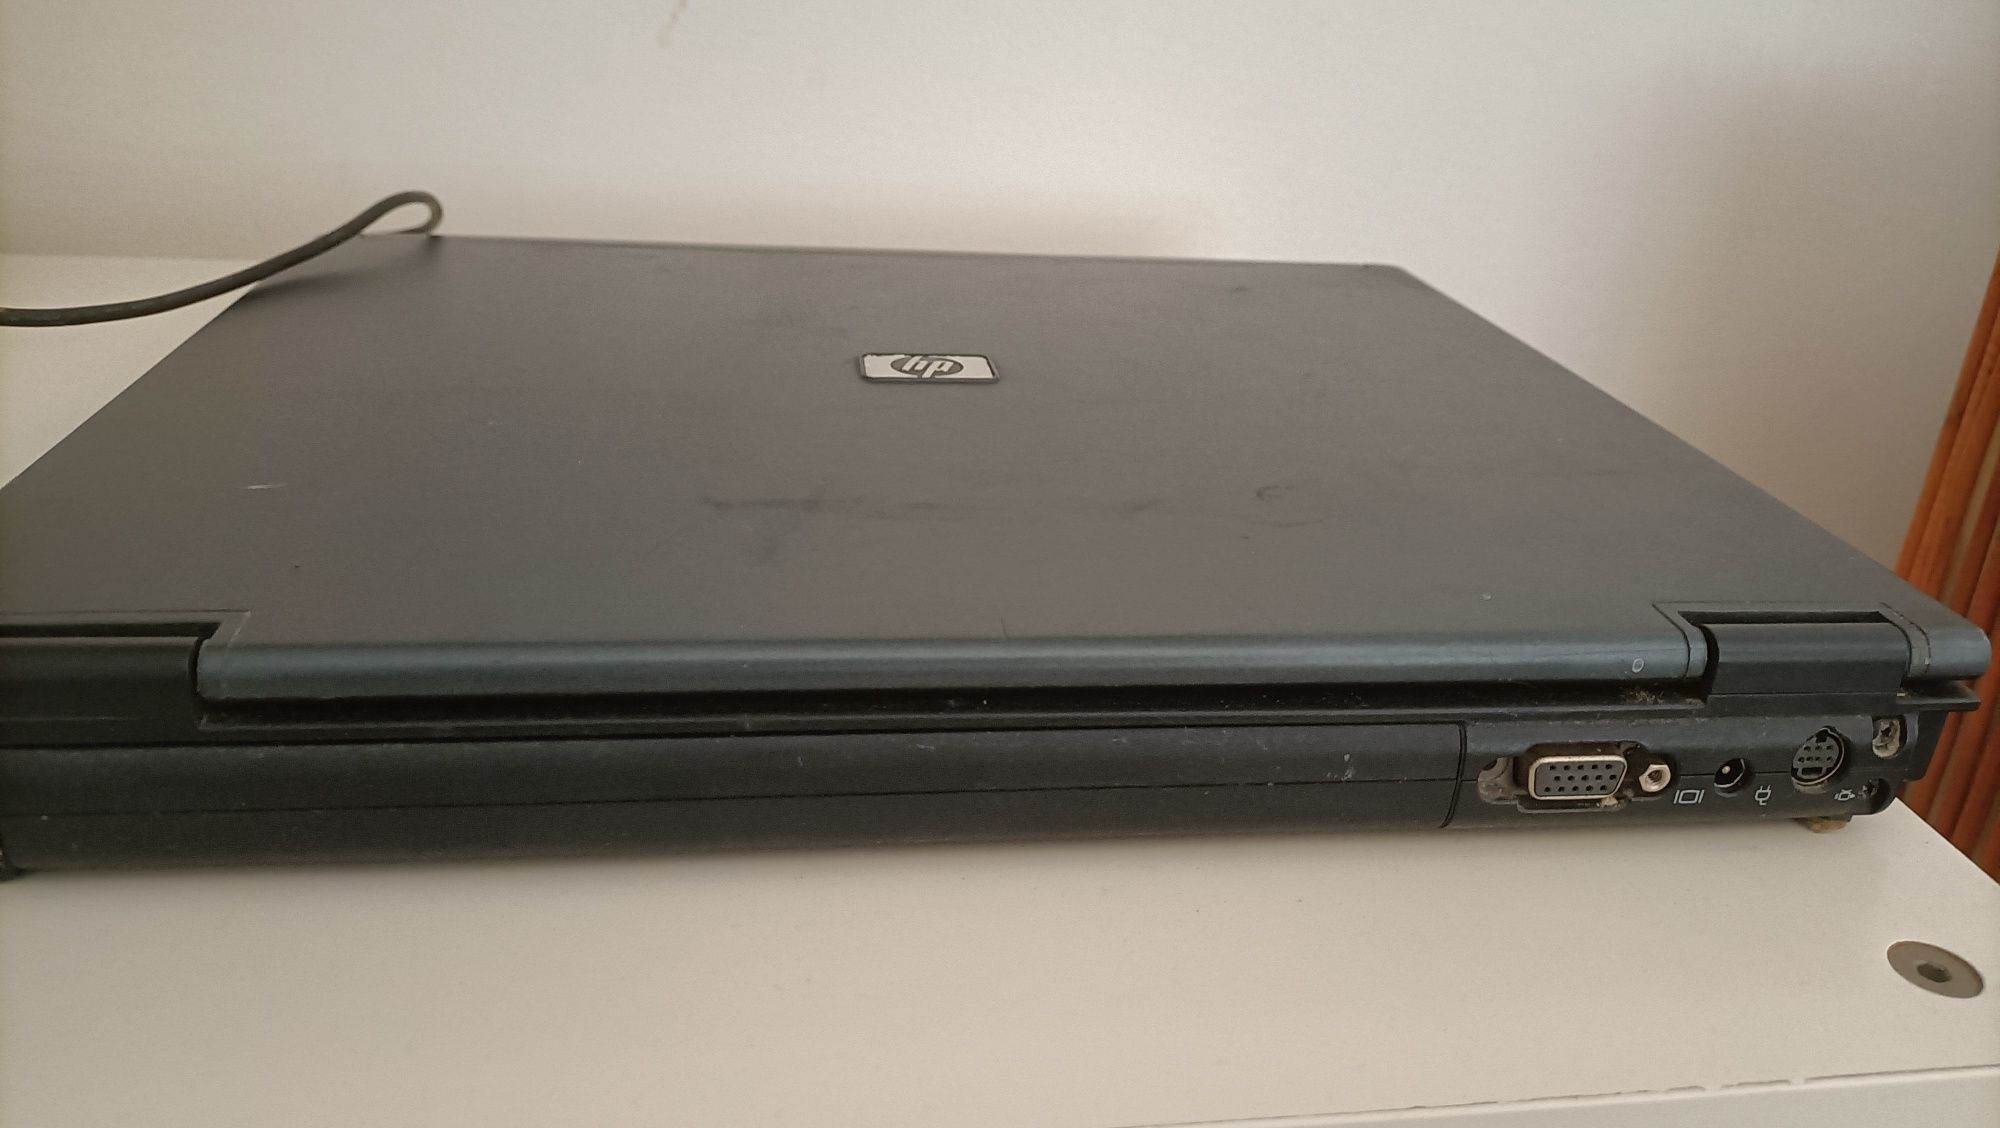 HP Compaq (model: nc6220)